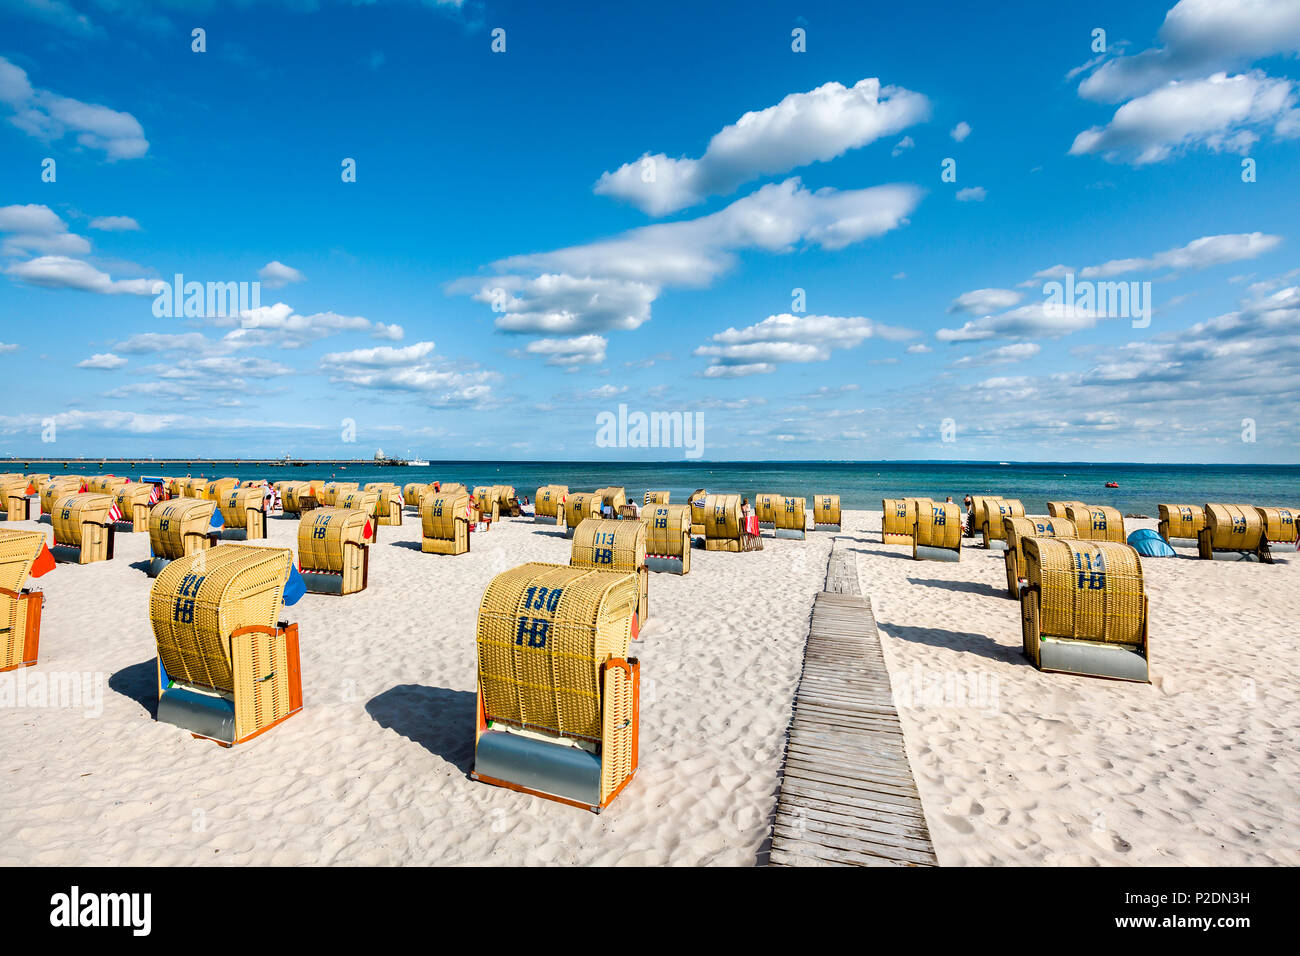 Strand mit Strandliegen, Groemitz blieben, Ostsee, Schleswig-Holstein, Deutschland Stockfoto